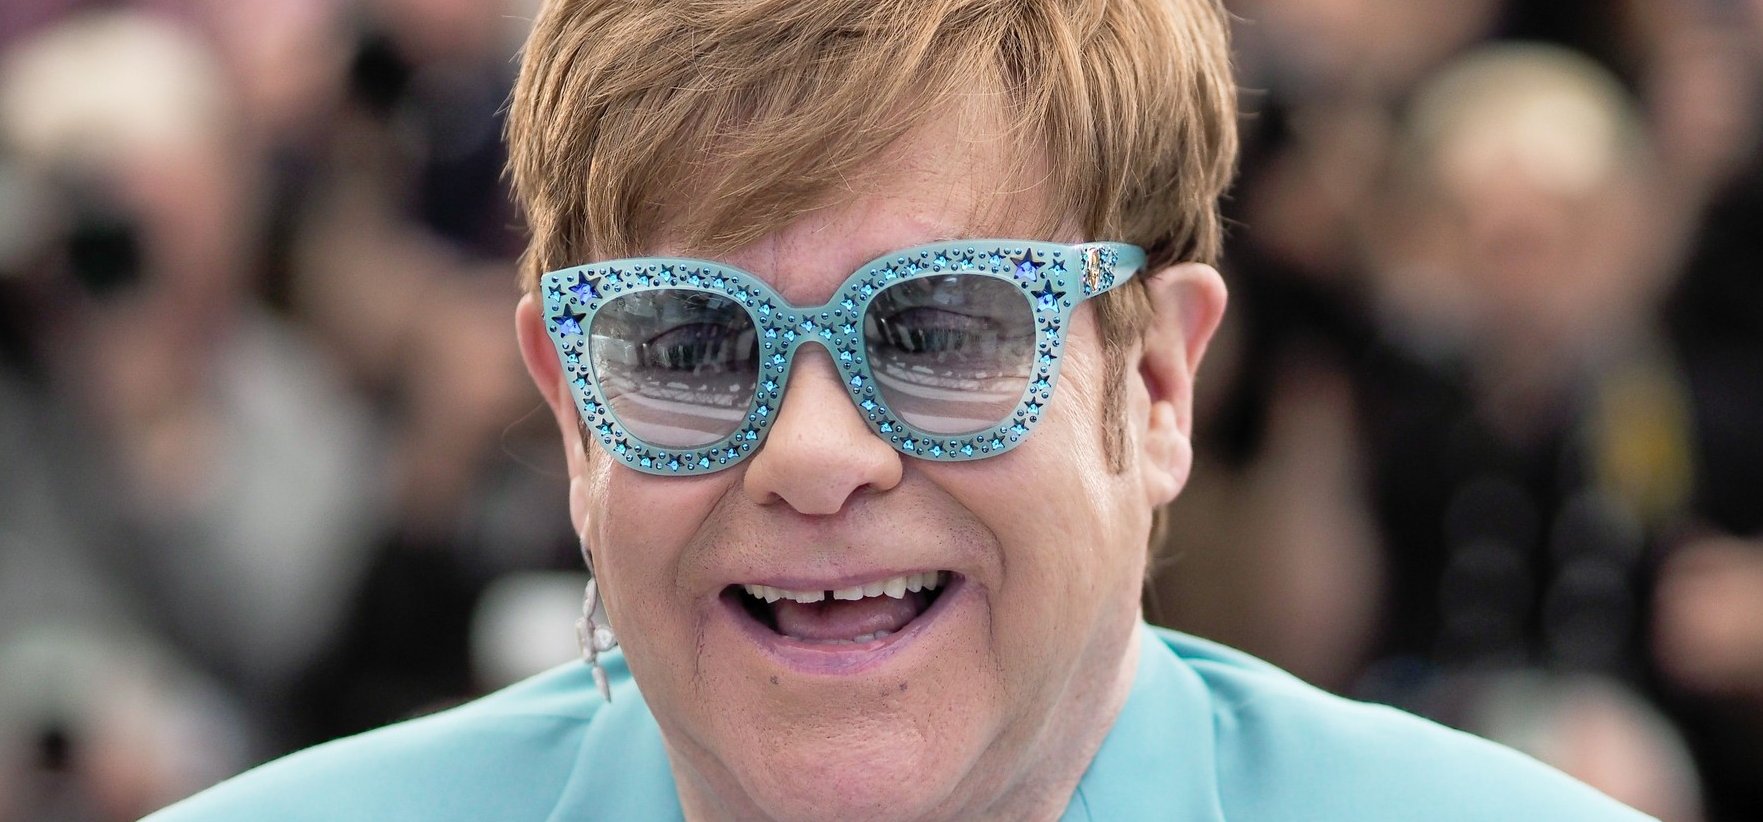 Nagyon rossz hírt kaptak Elton John rajongói – a világsztár a turnéját is lemondta